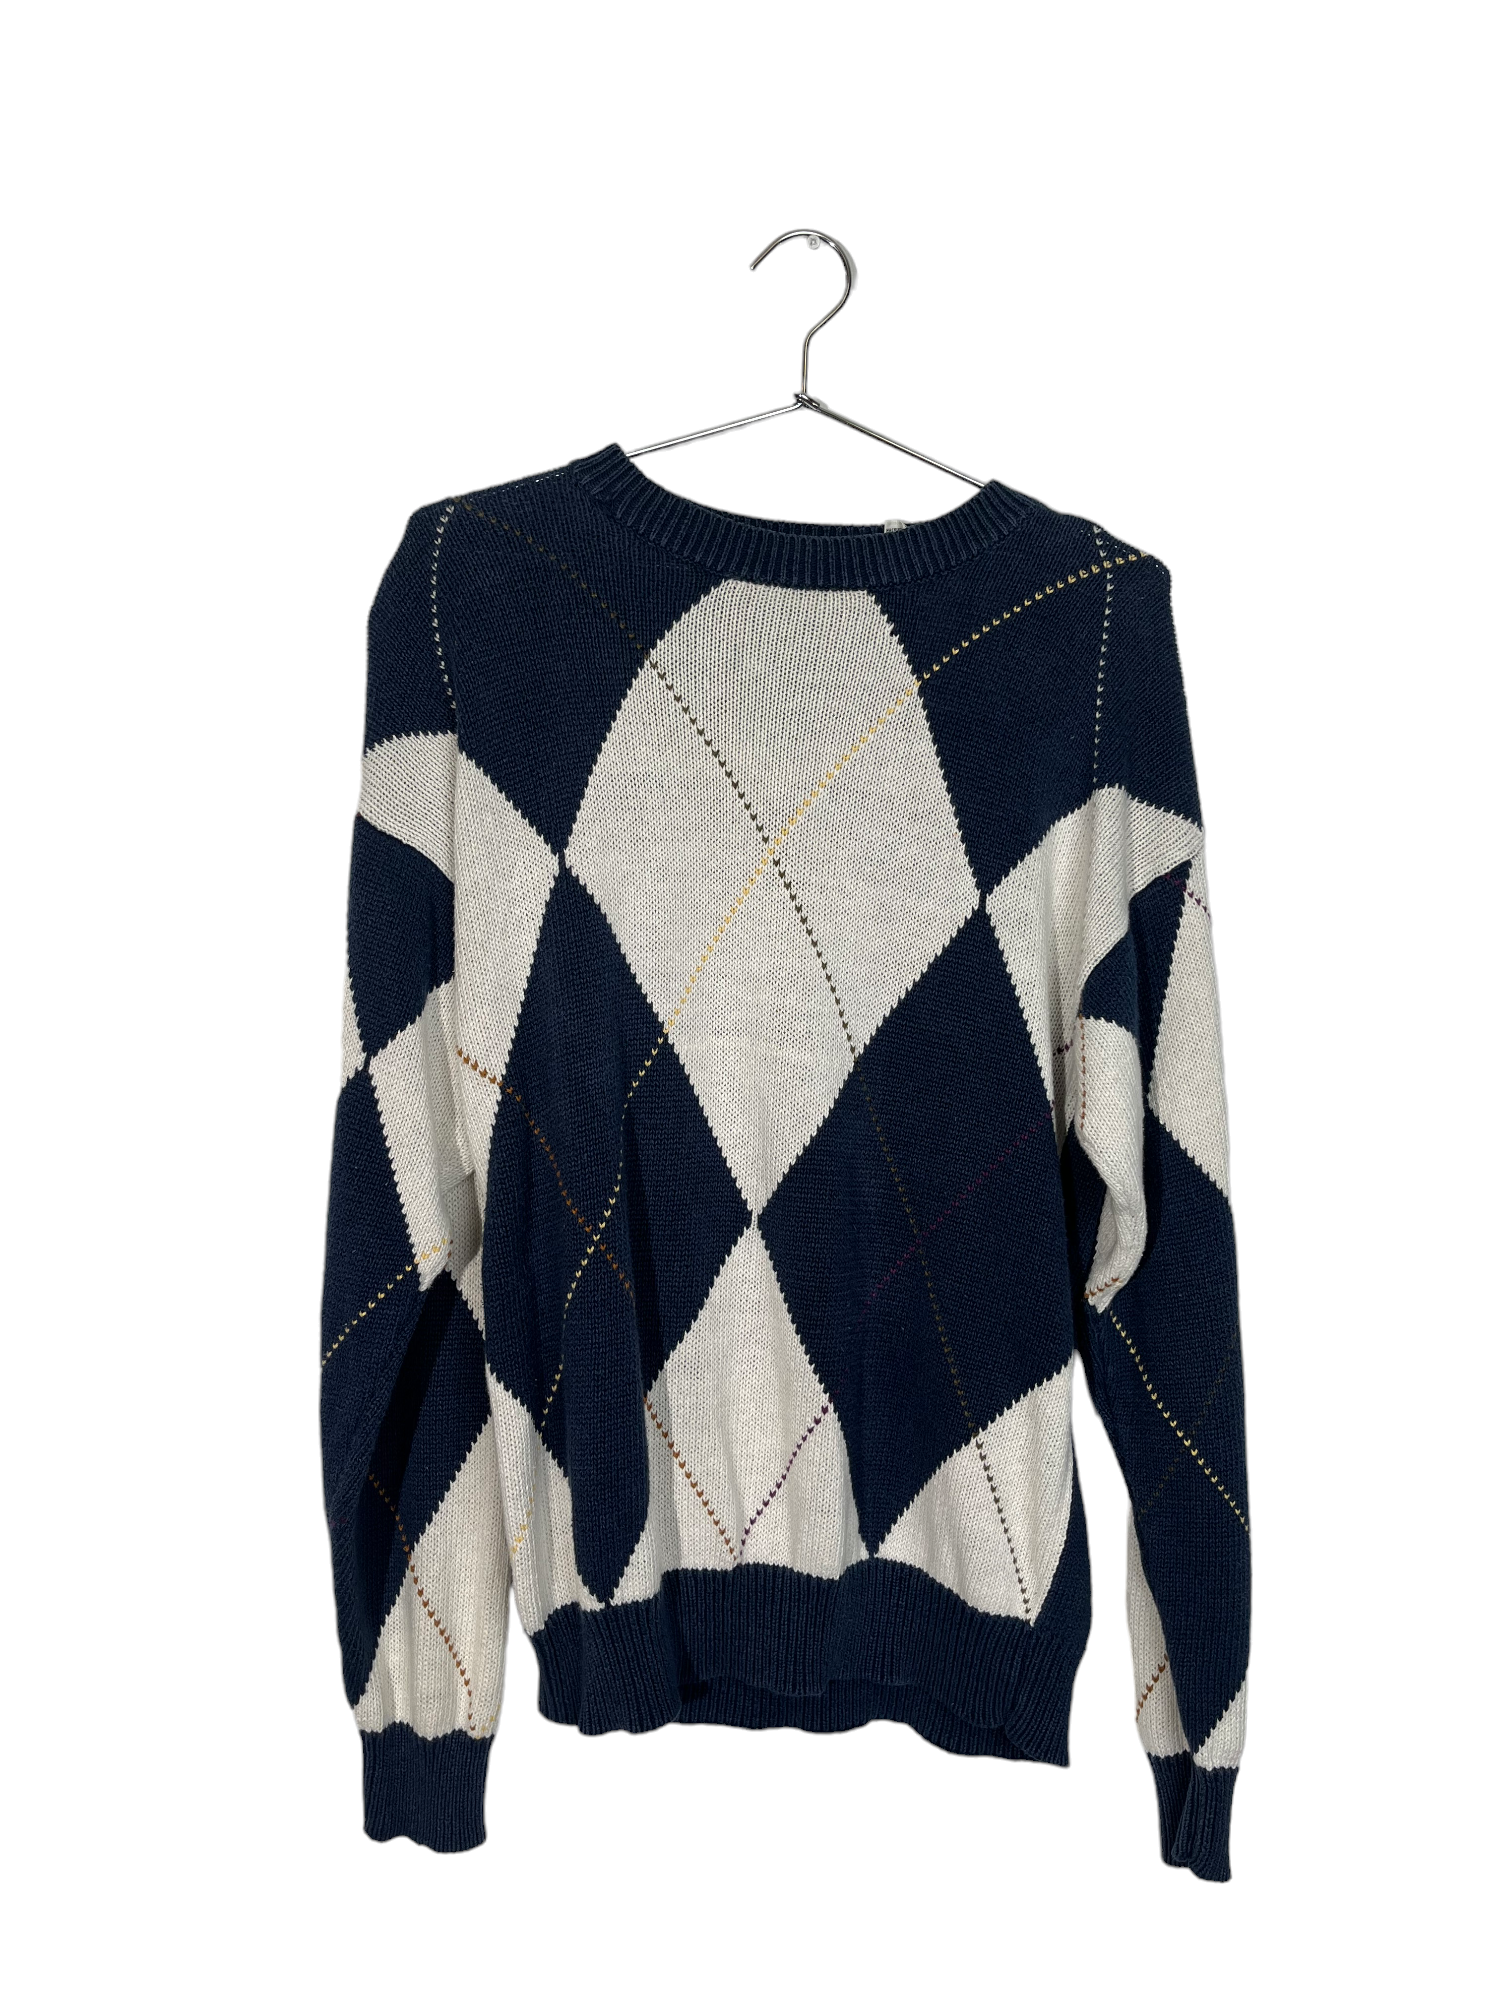 Navy & White Plaid Sweater